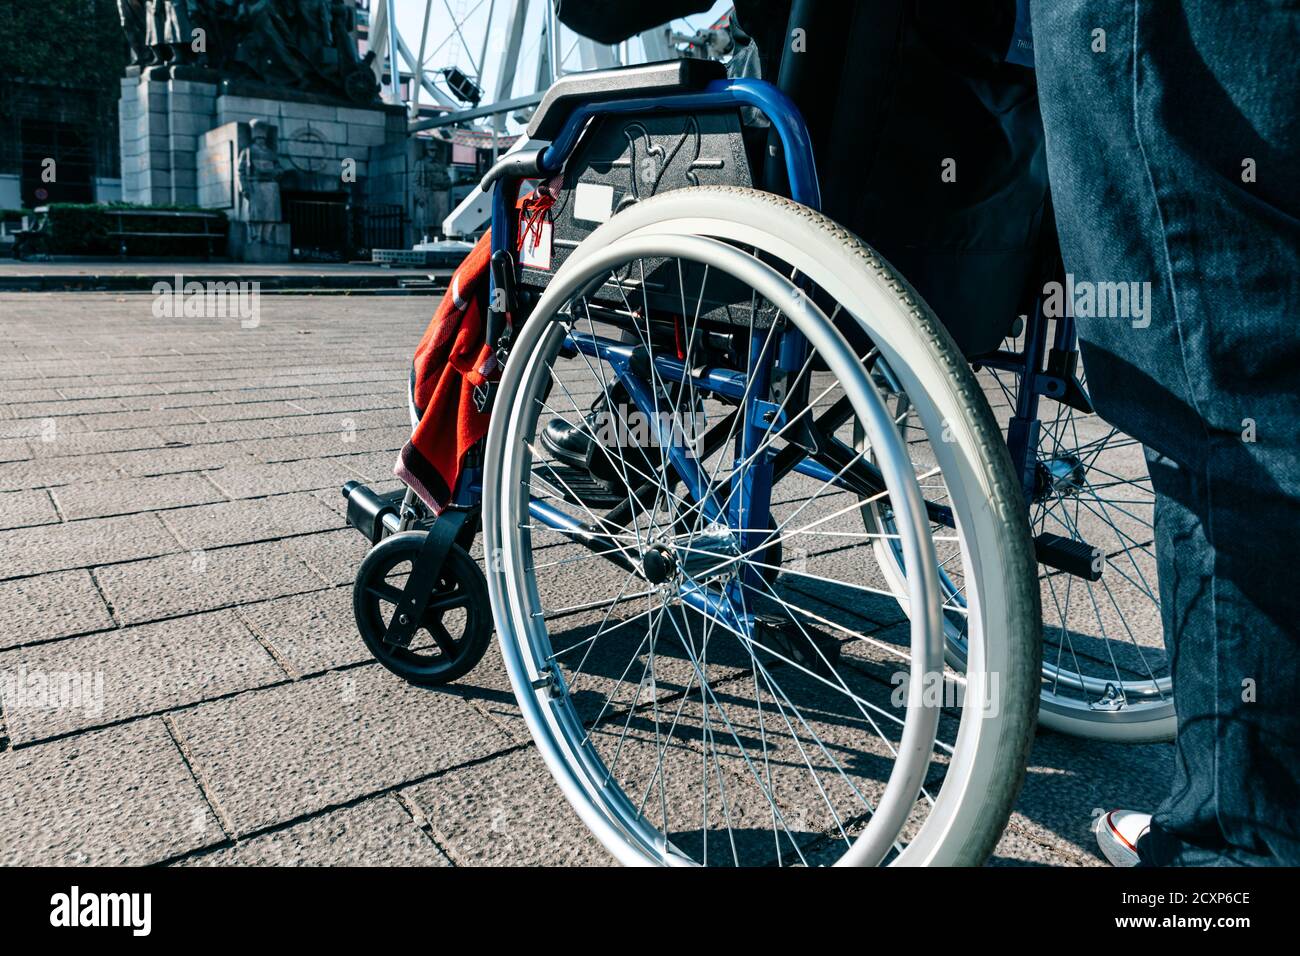 à l'extérieur près d'un fauteuil roulant - mobilité urbaine à l'intérieur un concept de statut d'invalidité Banque D'Images